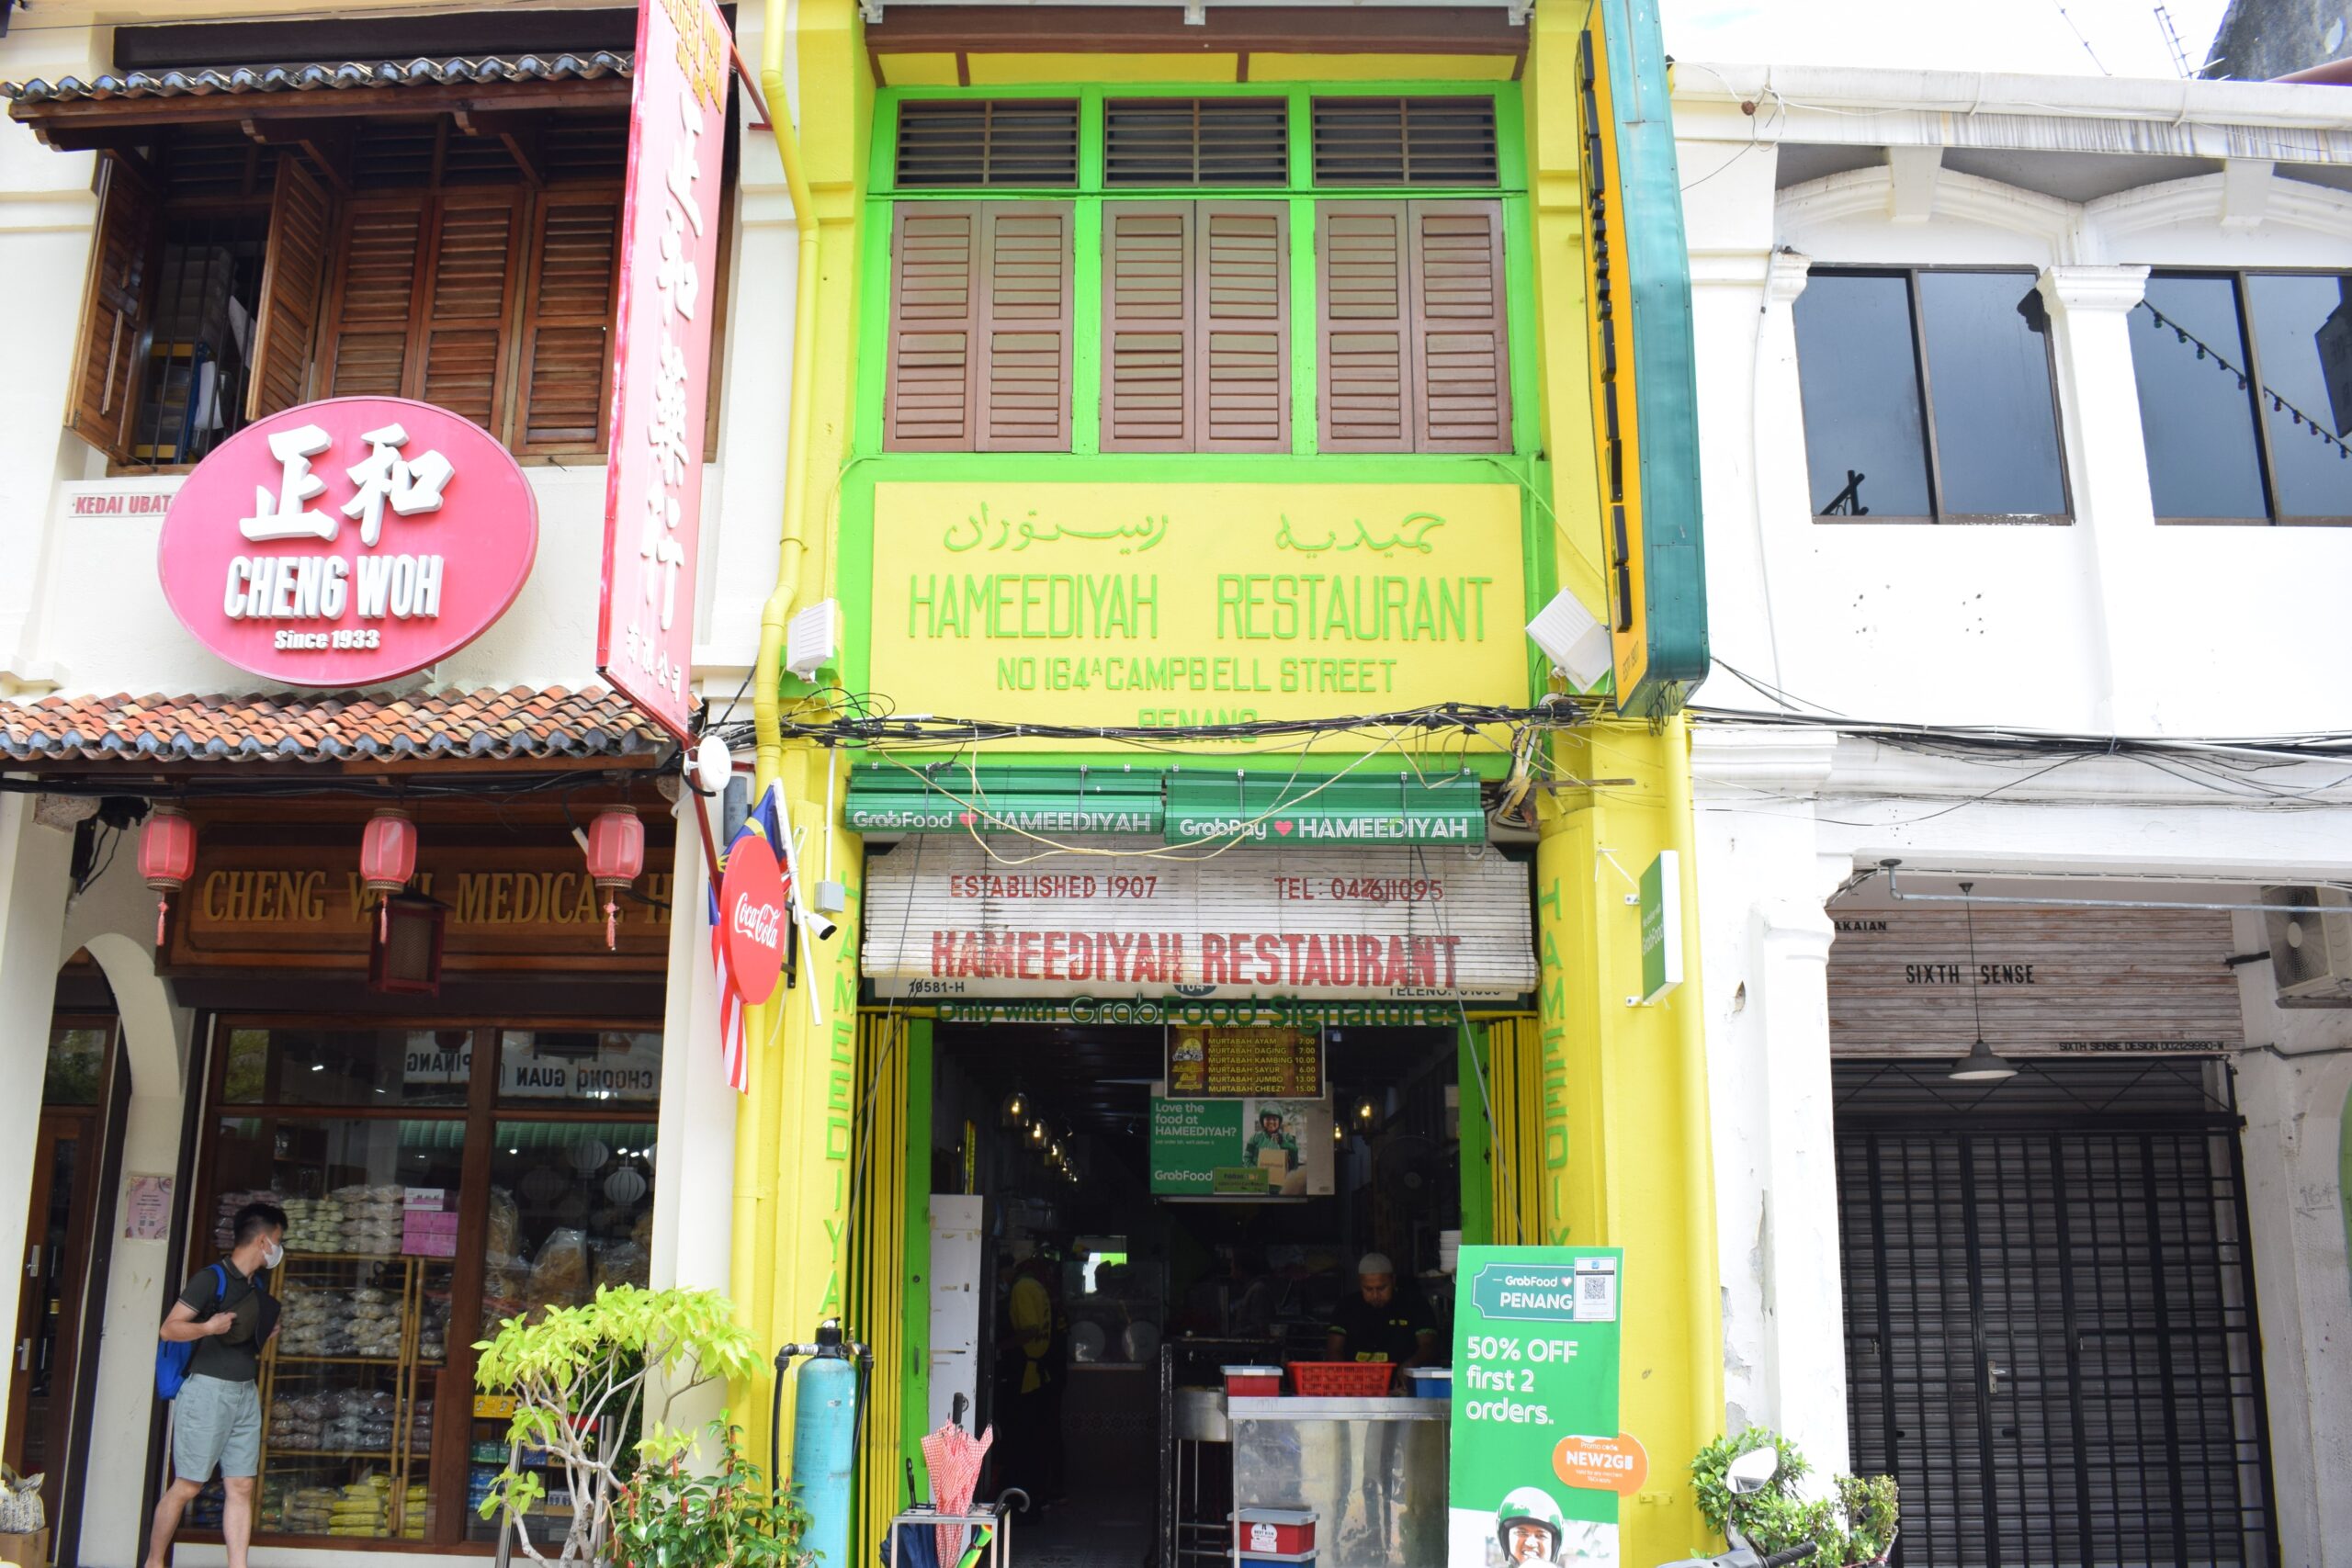 ペナンの食文化を紹介した名著『Penang Heritage Food』に登場する「Hameediyah」。南インドからの移民がナシ（ご飯）をカンダー（竿だけ）に吊り下げた籠に入れて売り歩いたのが始まり